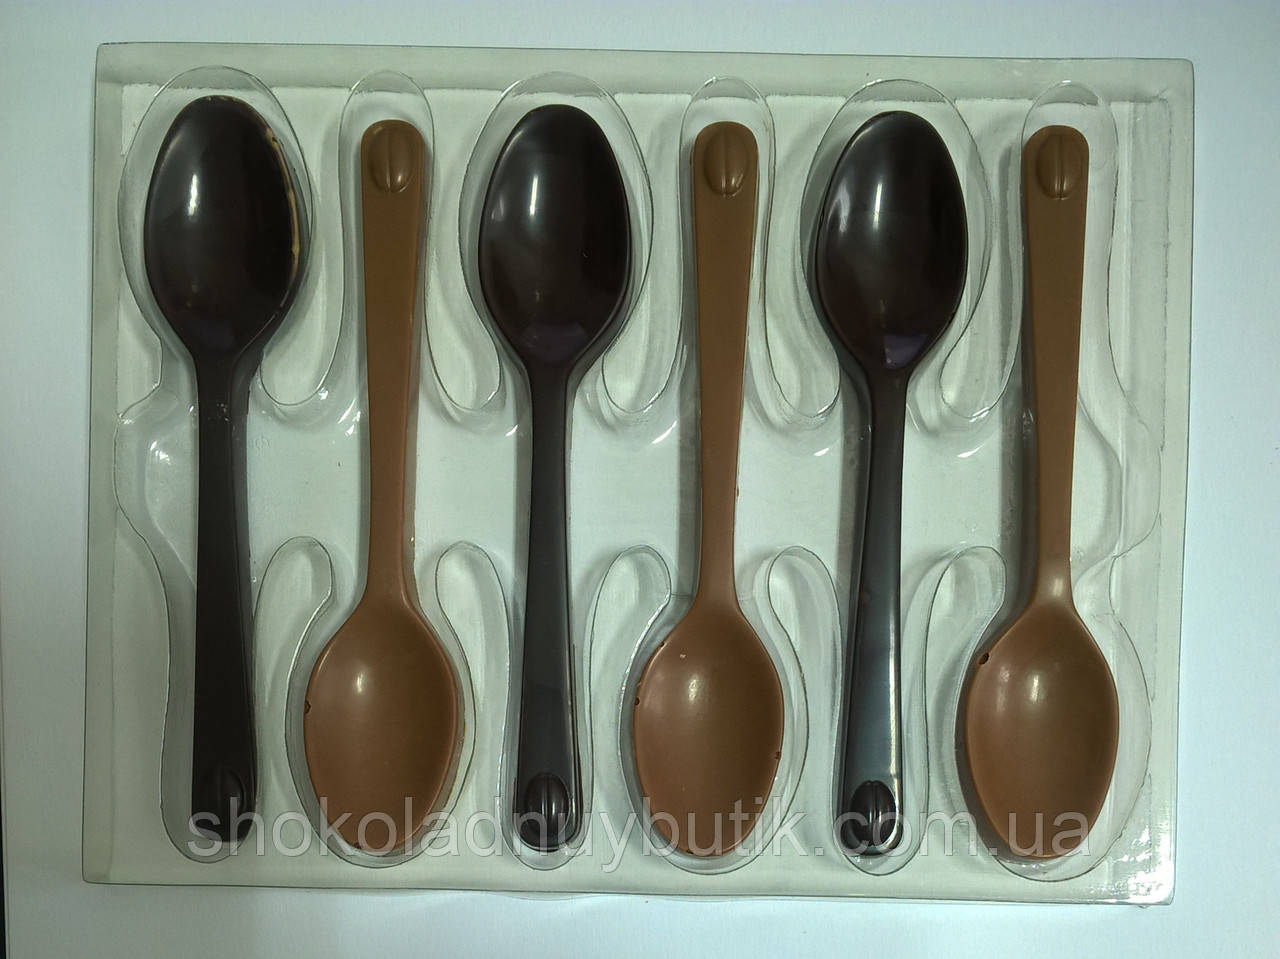 Шоколадні ложки Elit Choco Spoons Milk & Dark, 54 р.